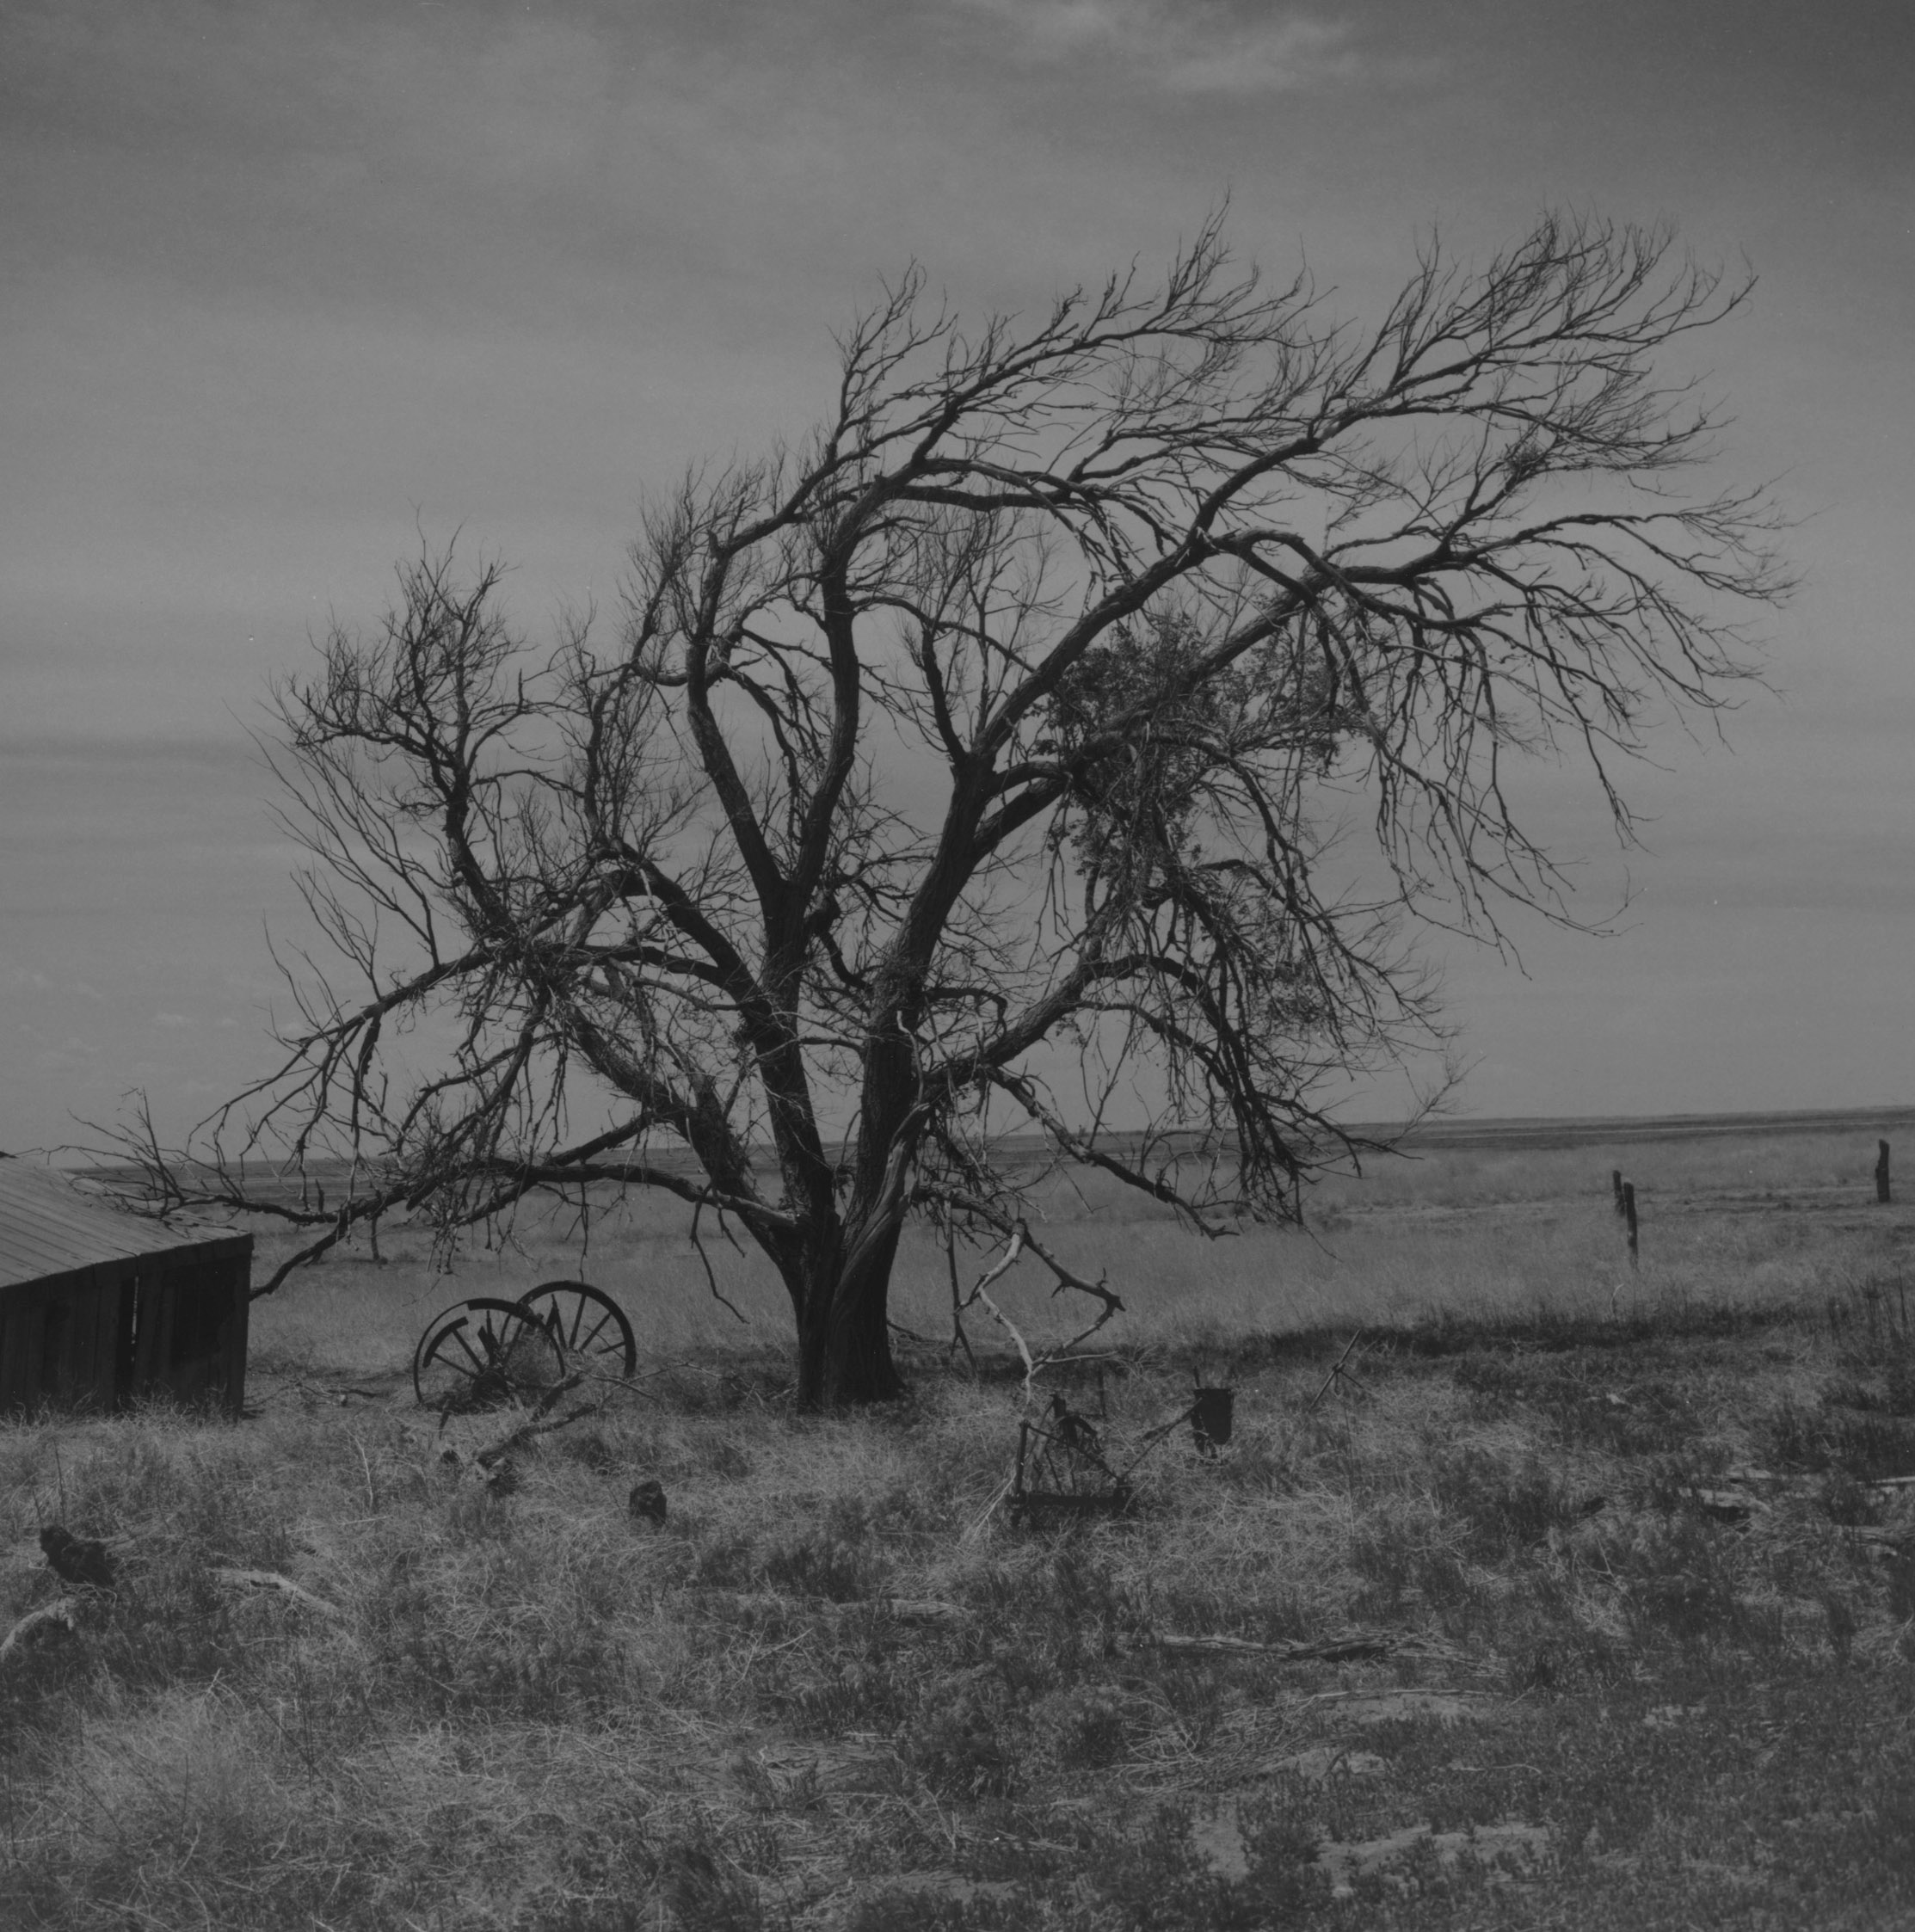 RD160, Pretchett, Colorado Comanche Grassland  